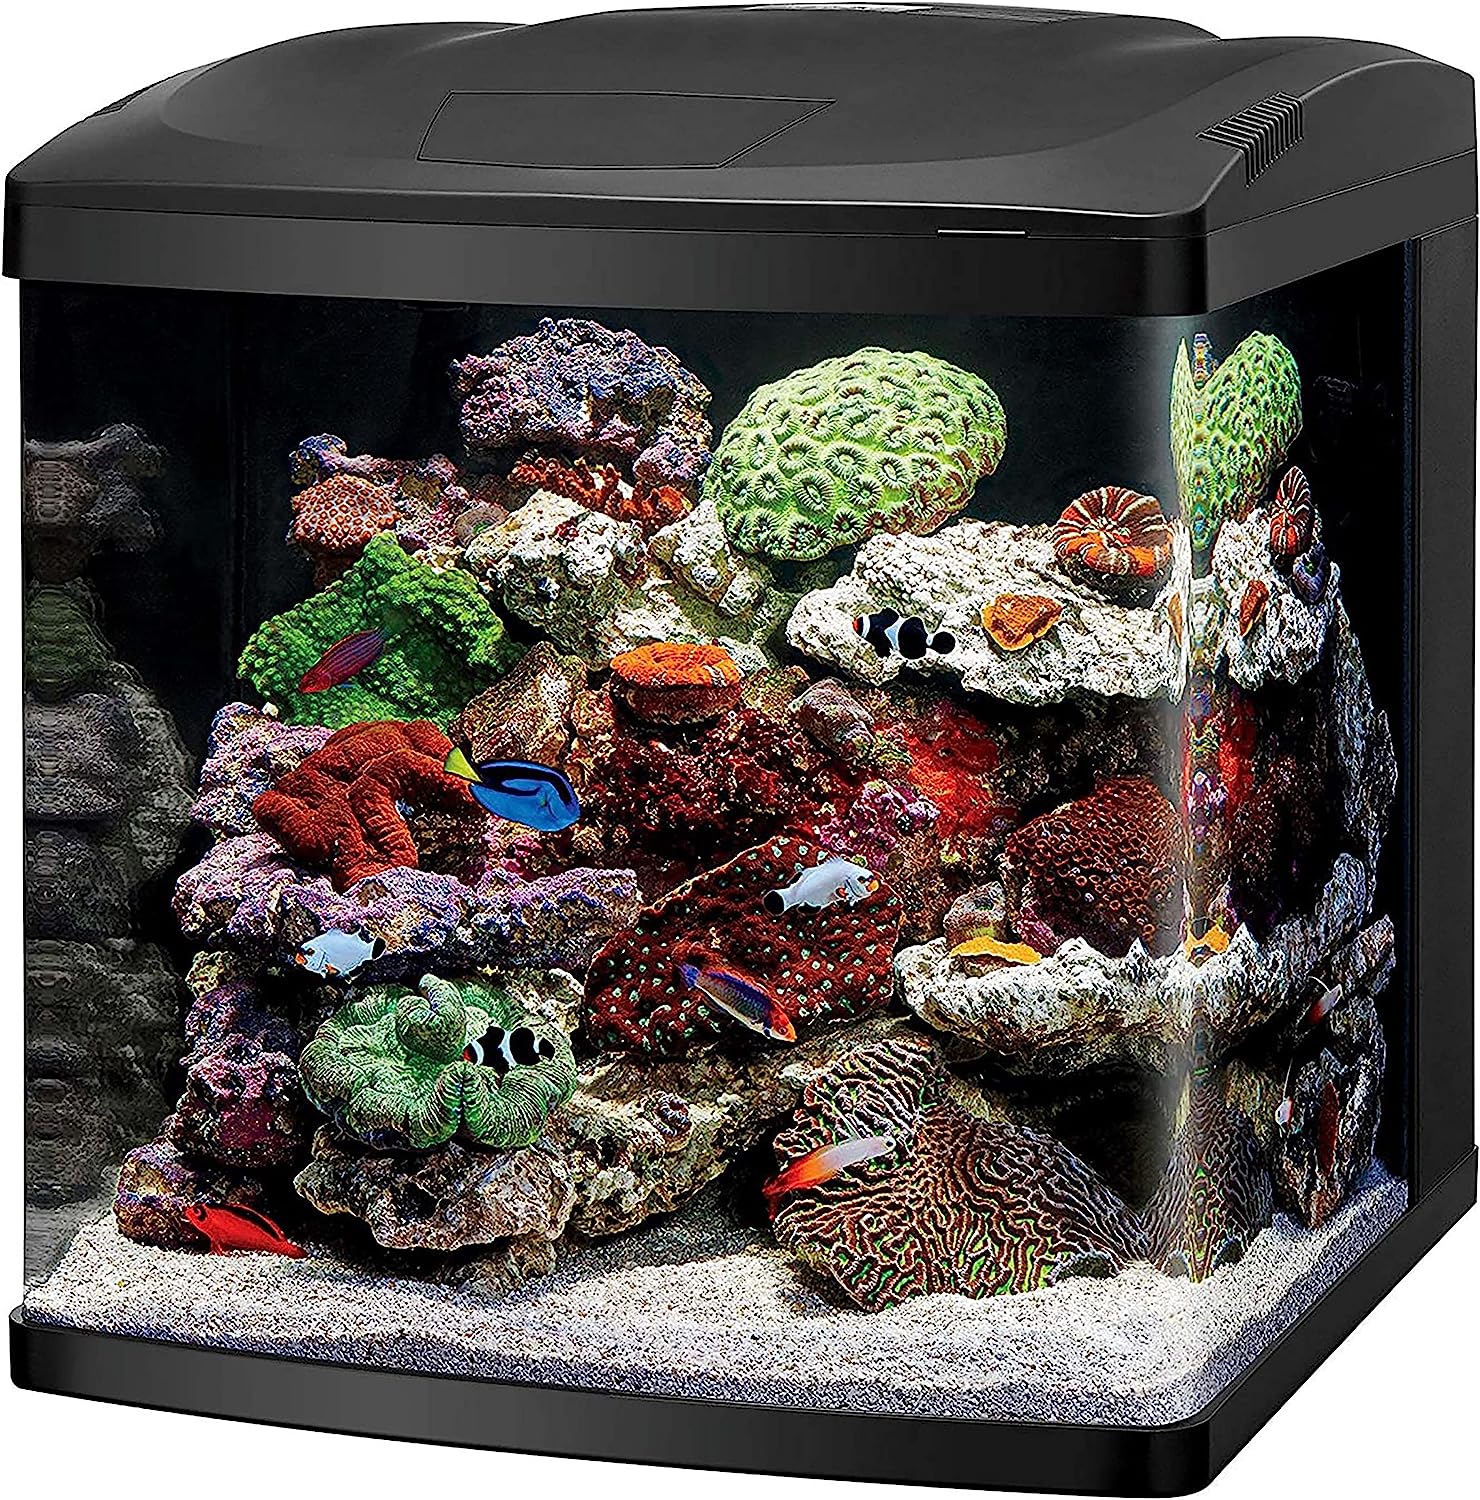 Coralife Biocube 16G Aquarium w/ LED's